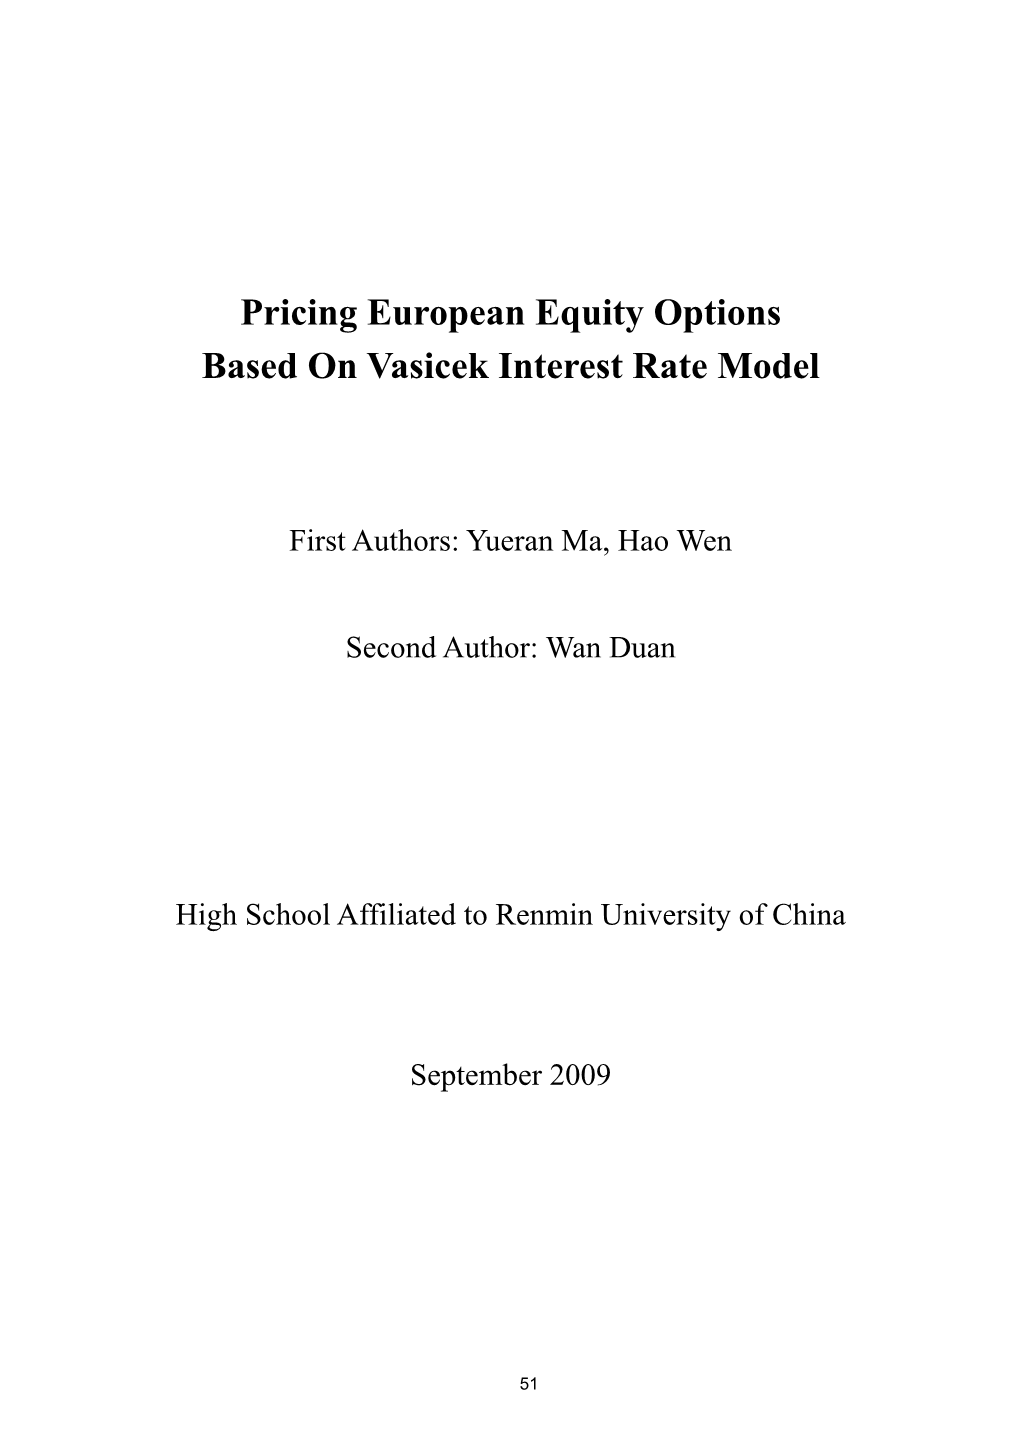 Pricing European Equity Options Based on Vasicek Interest Rate Model